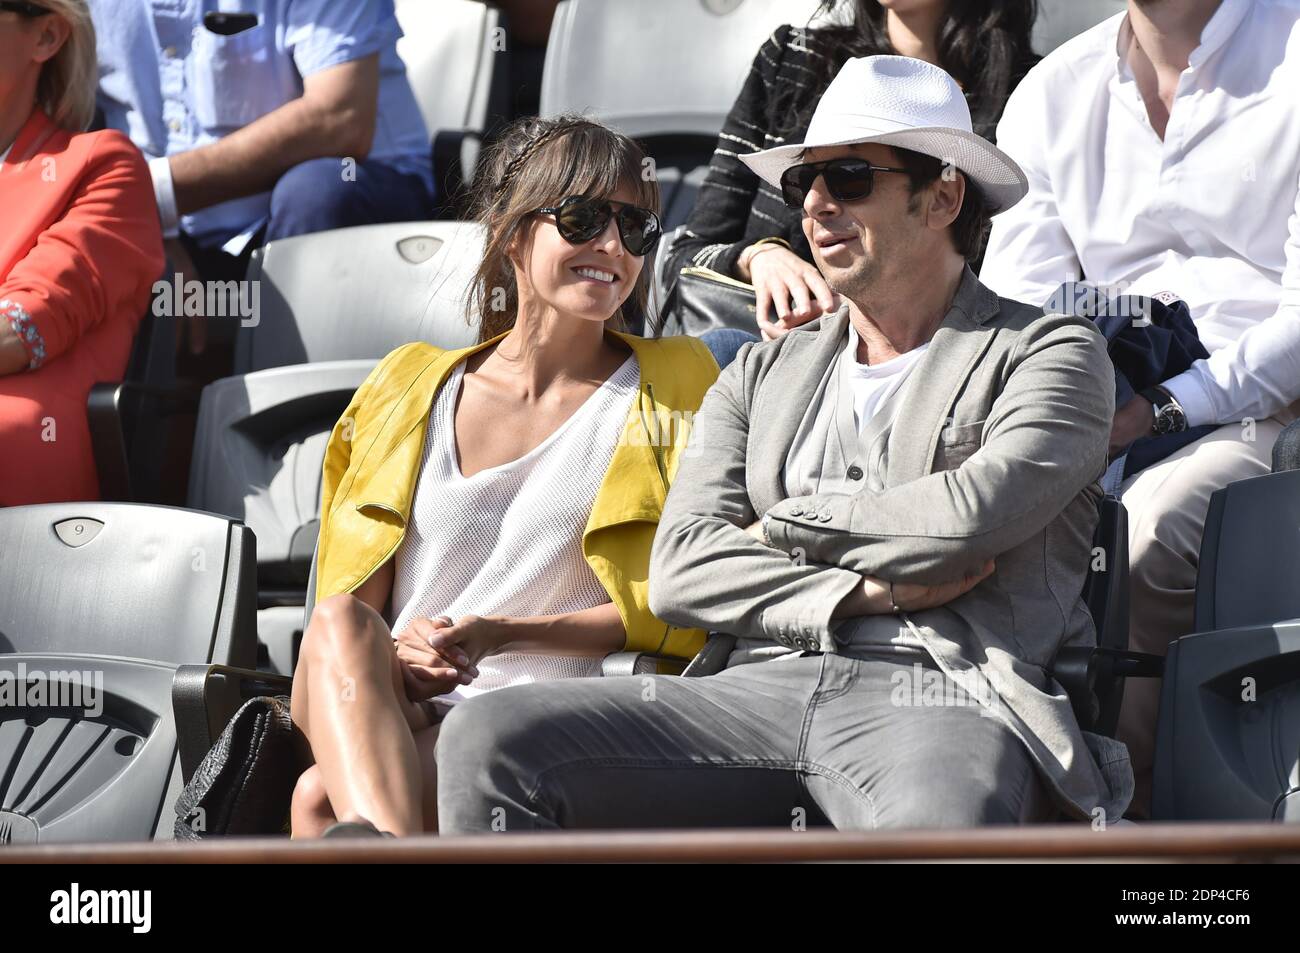 Patrick Bruel et sa copine lors de l'Open de tennis 2015 de Roland Garros a  Paris, France, le 30 mai 2015, Photo by Nicolas Gouhier/ABACAPRESS.COM  Stock Photo - Alamy